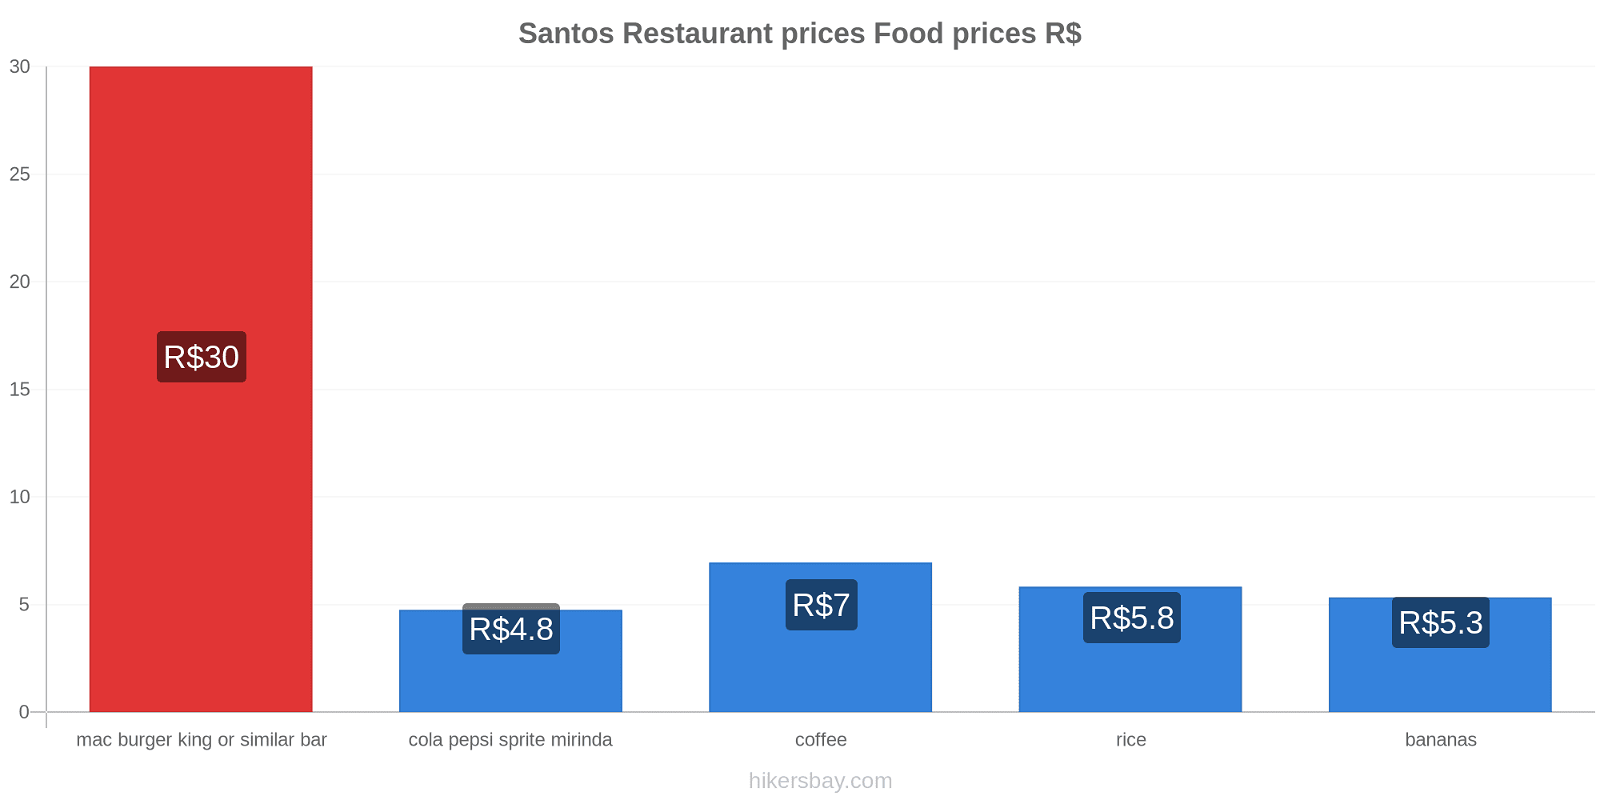 Santos price changes hikersbay.com